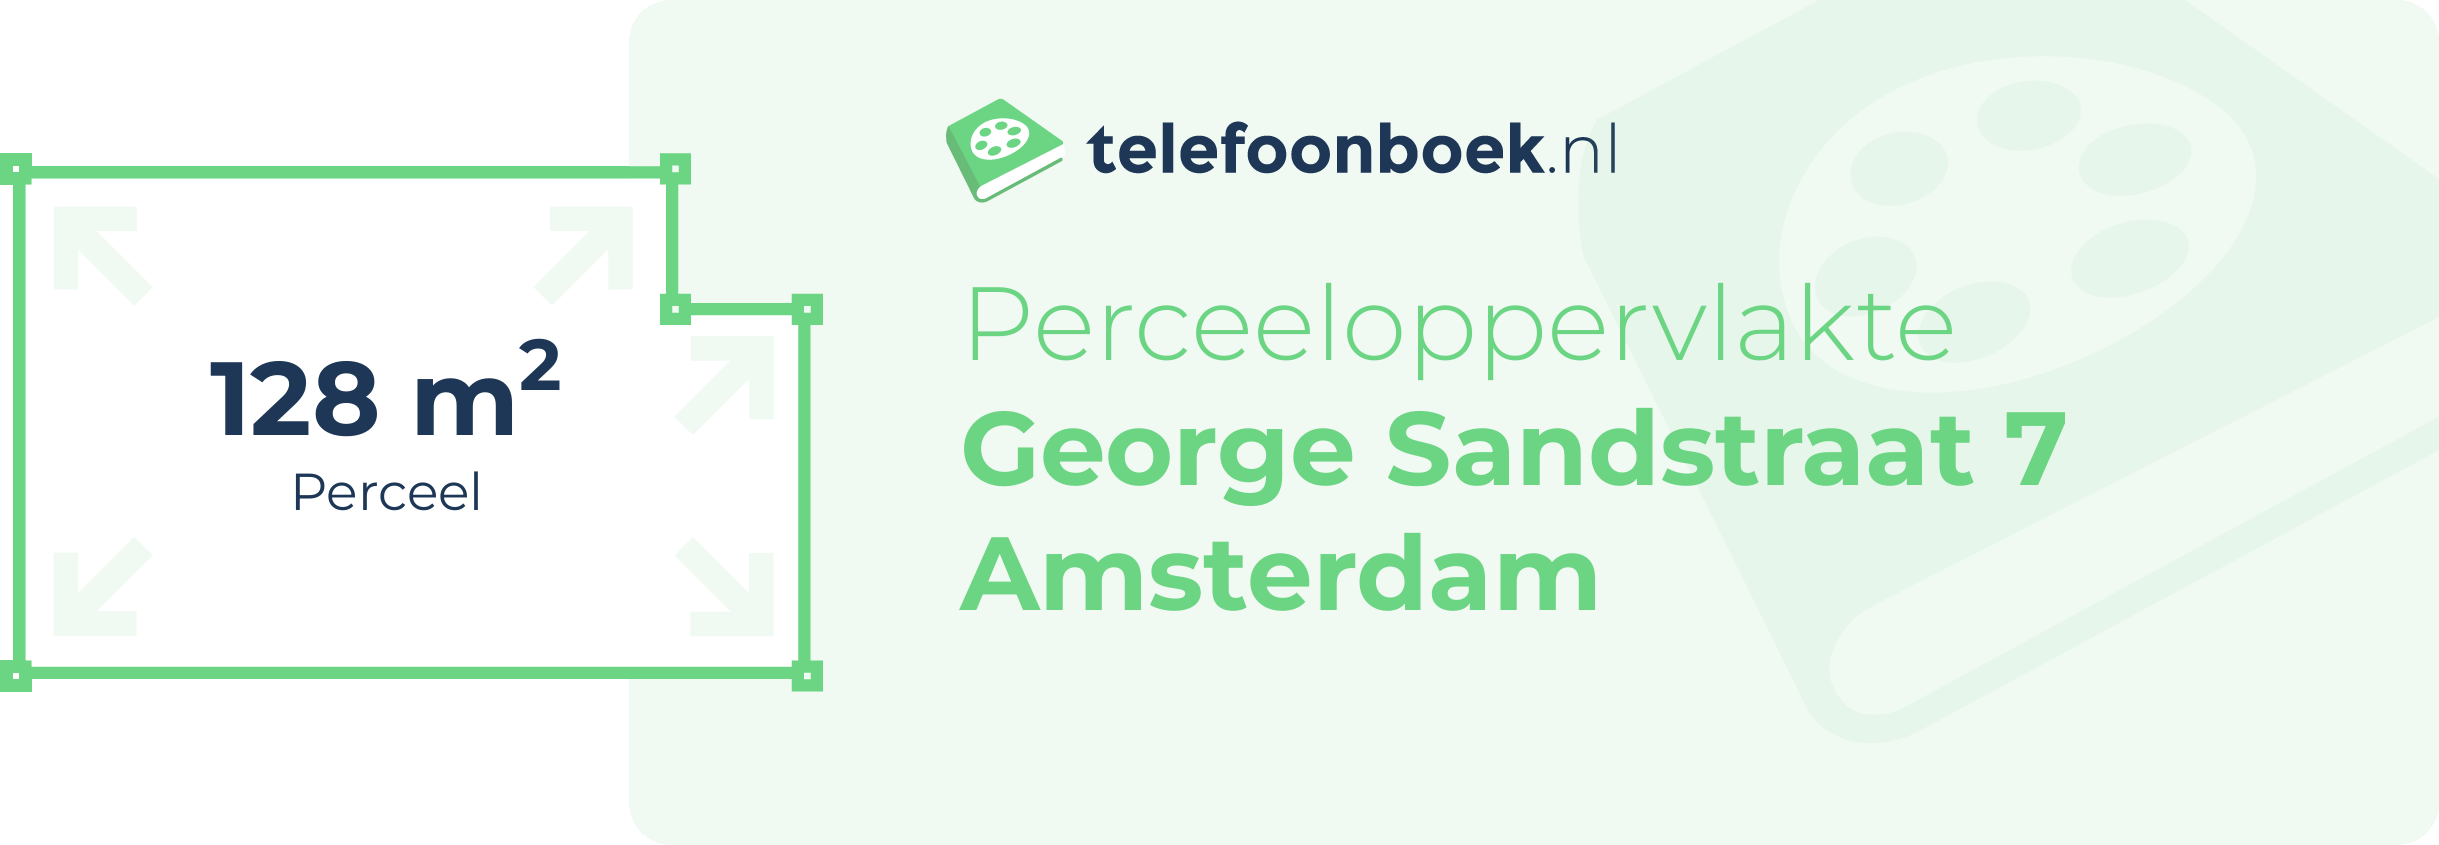 Perceeloppervlakte George Sandstraat 7 Amsterdam